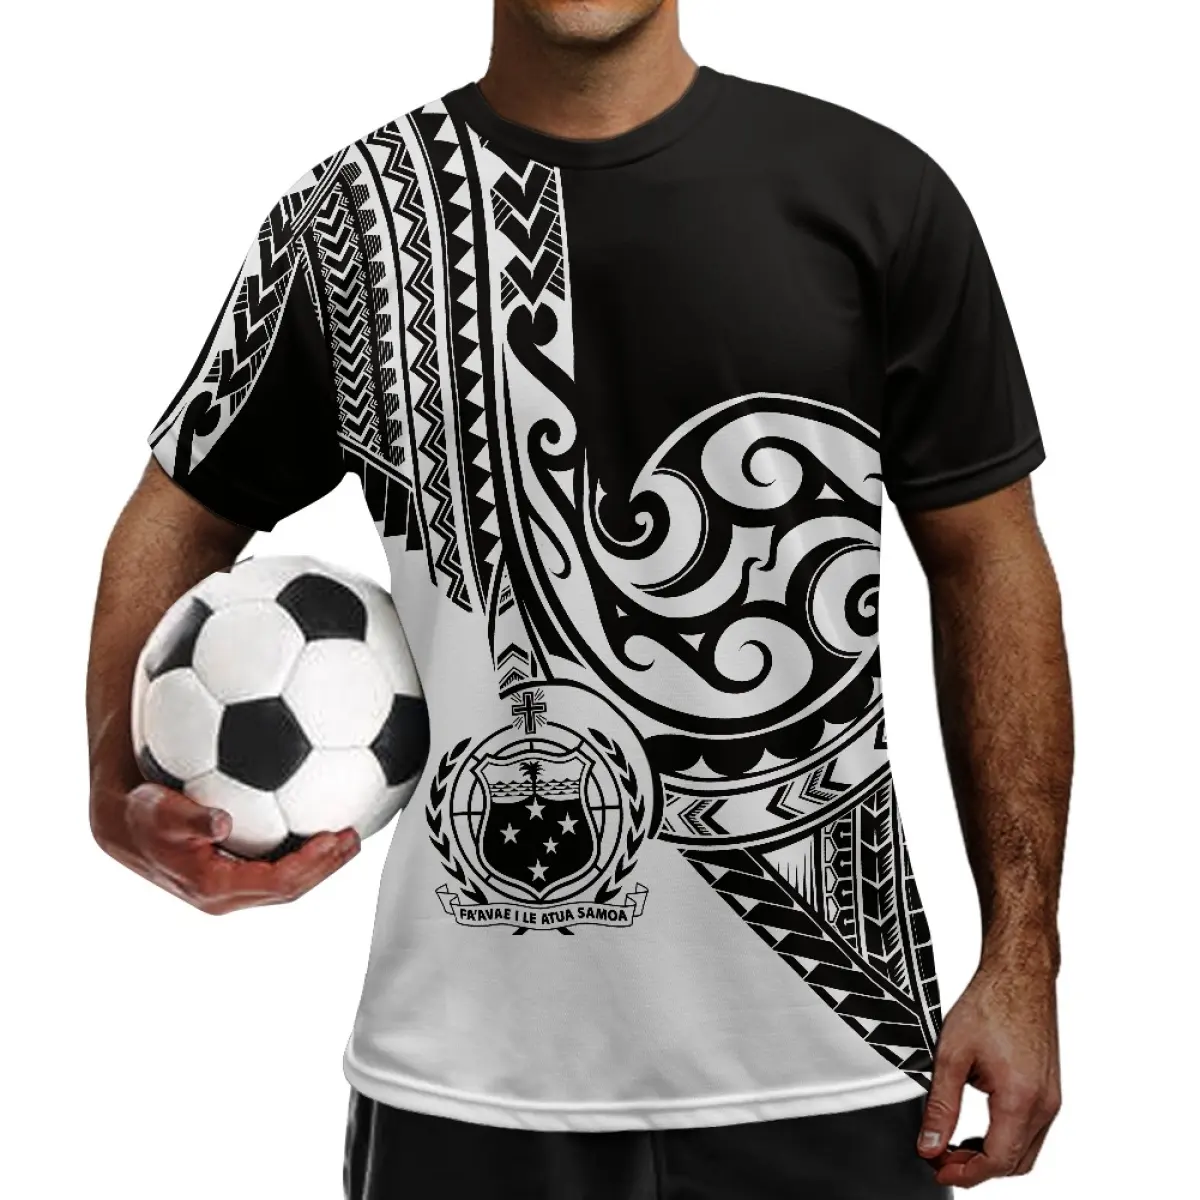 Оптовая продажа, футболки больших размеров, футболки с коротким рукавом, татуированным тотемем, полинезийское племя Самоа, полиэстер, Молодежные футболки